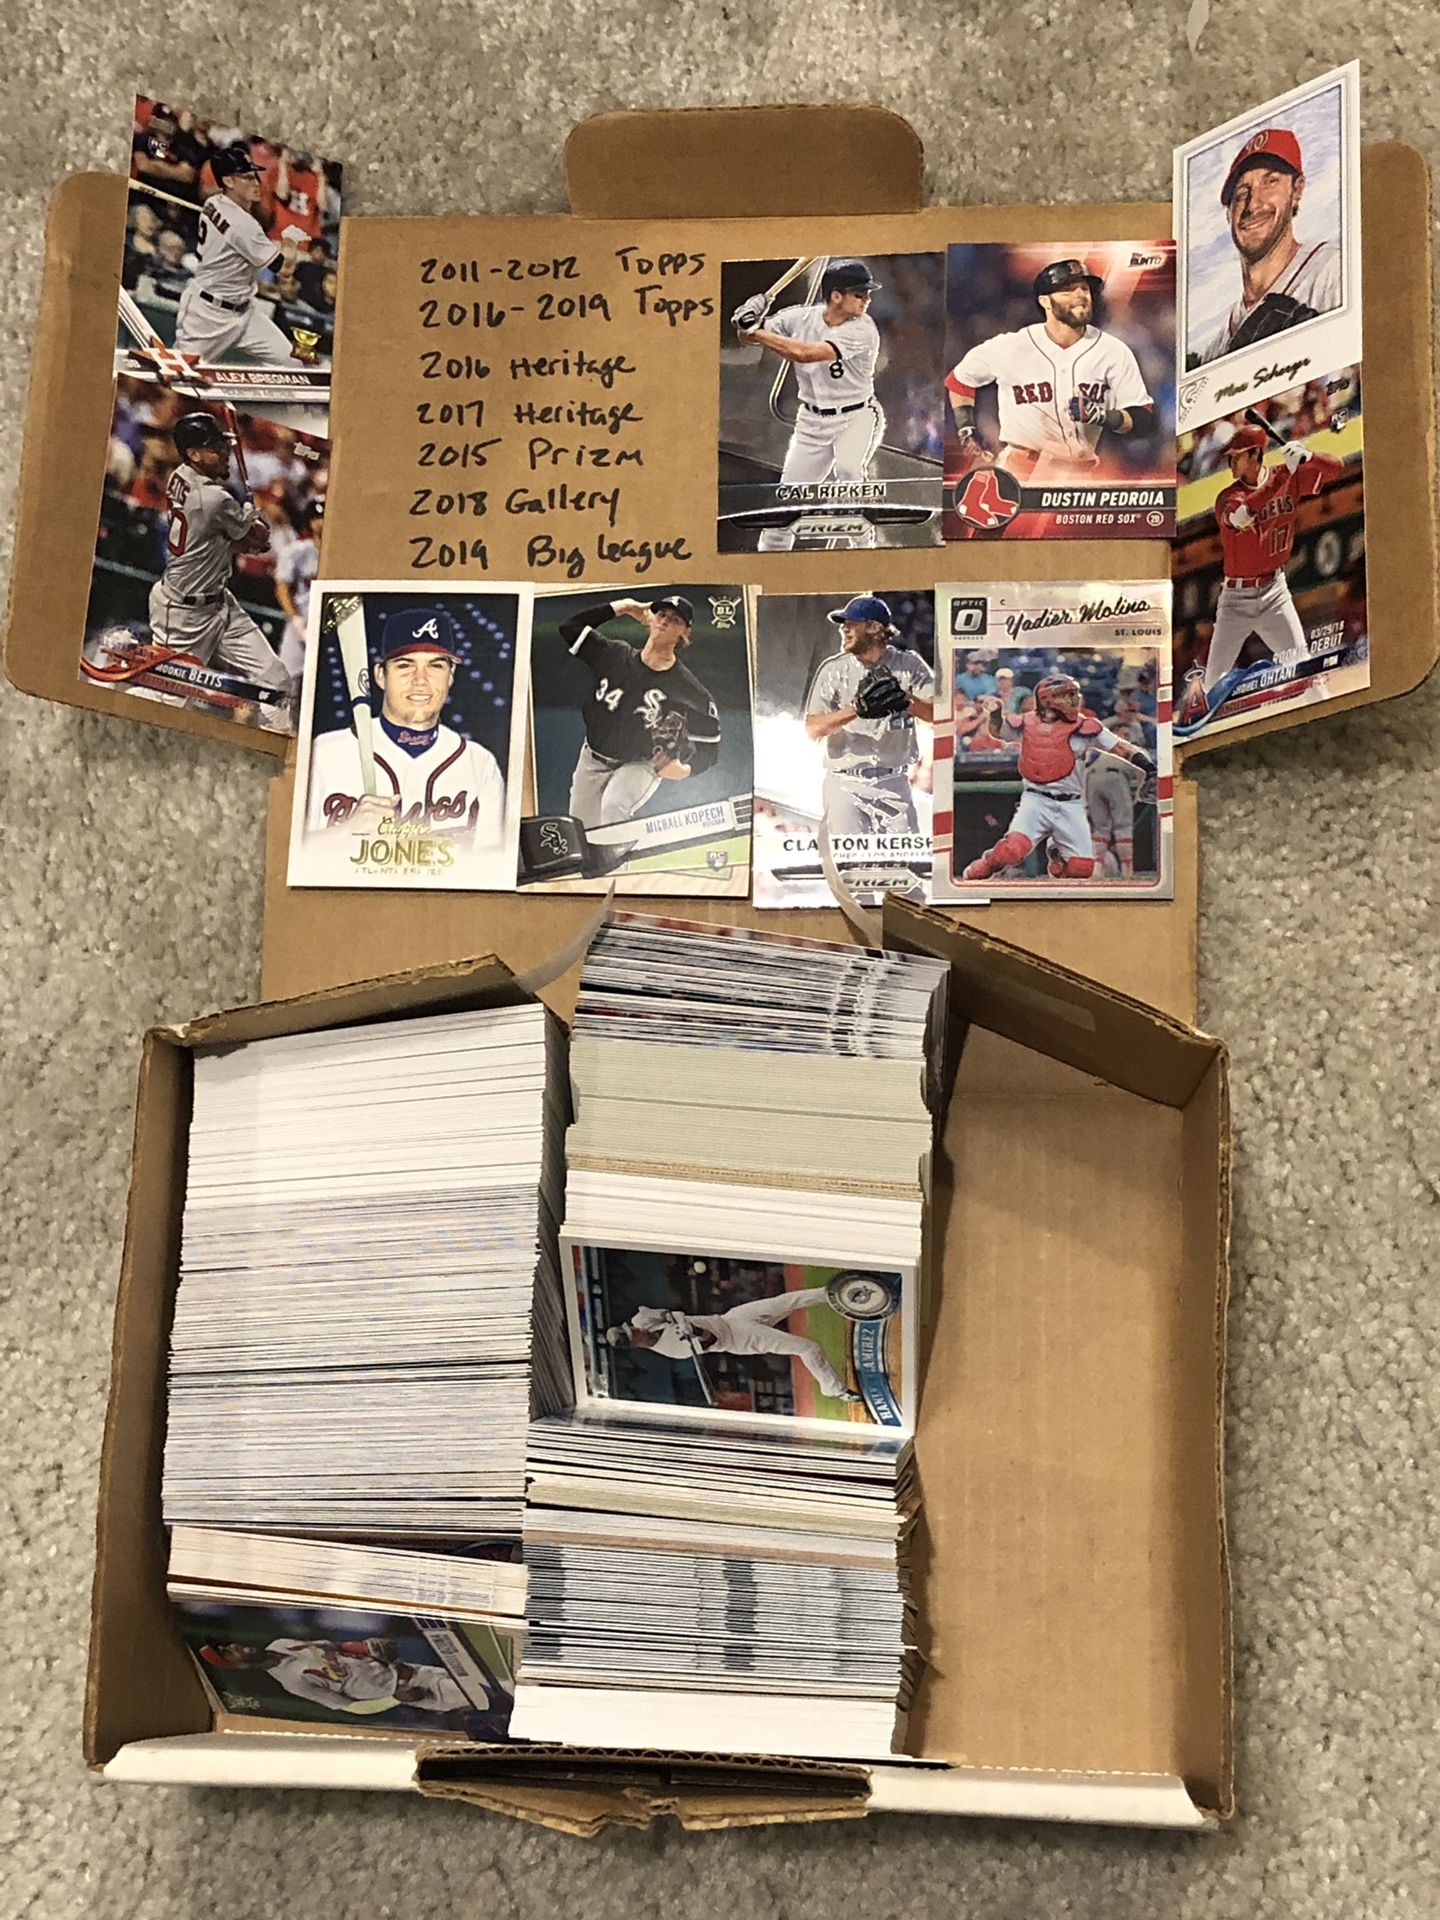 2015-2019 mixed brand baseball cards